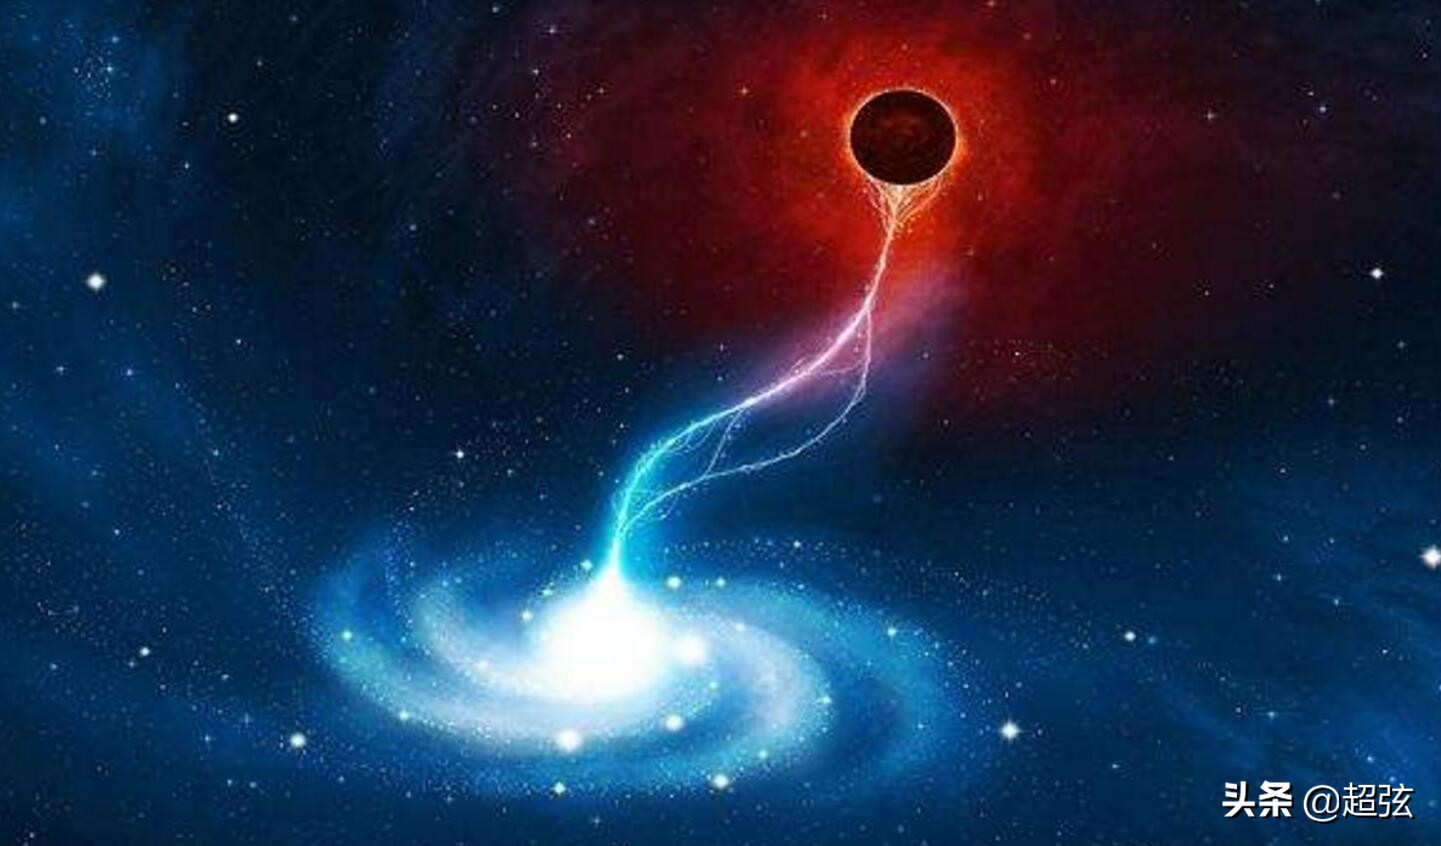 为什么白洞比黑洞恐怖 黑洞唯一害怕的天体